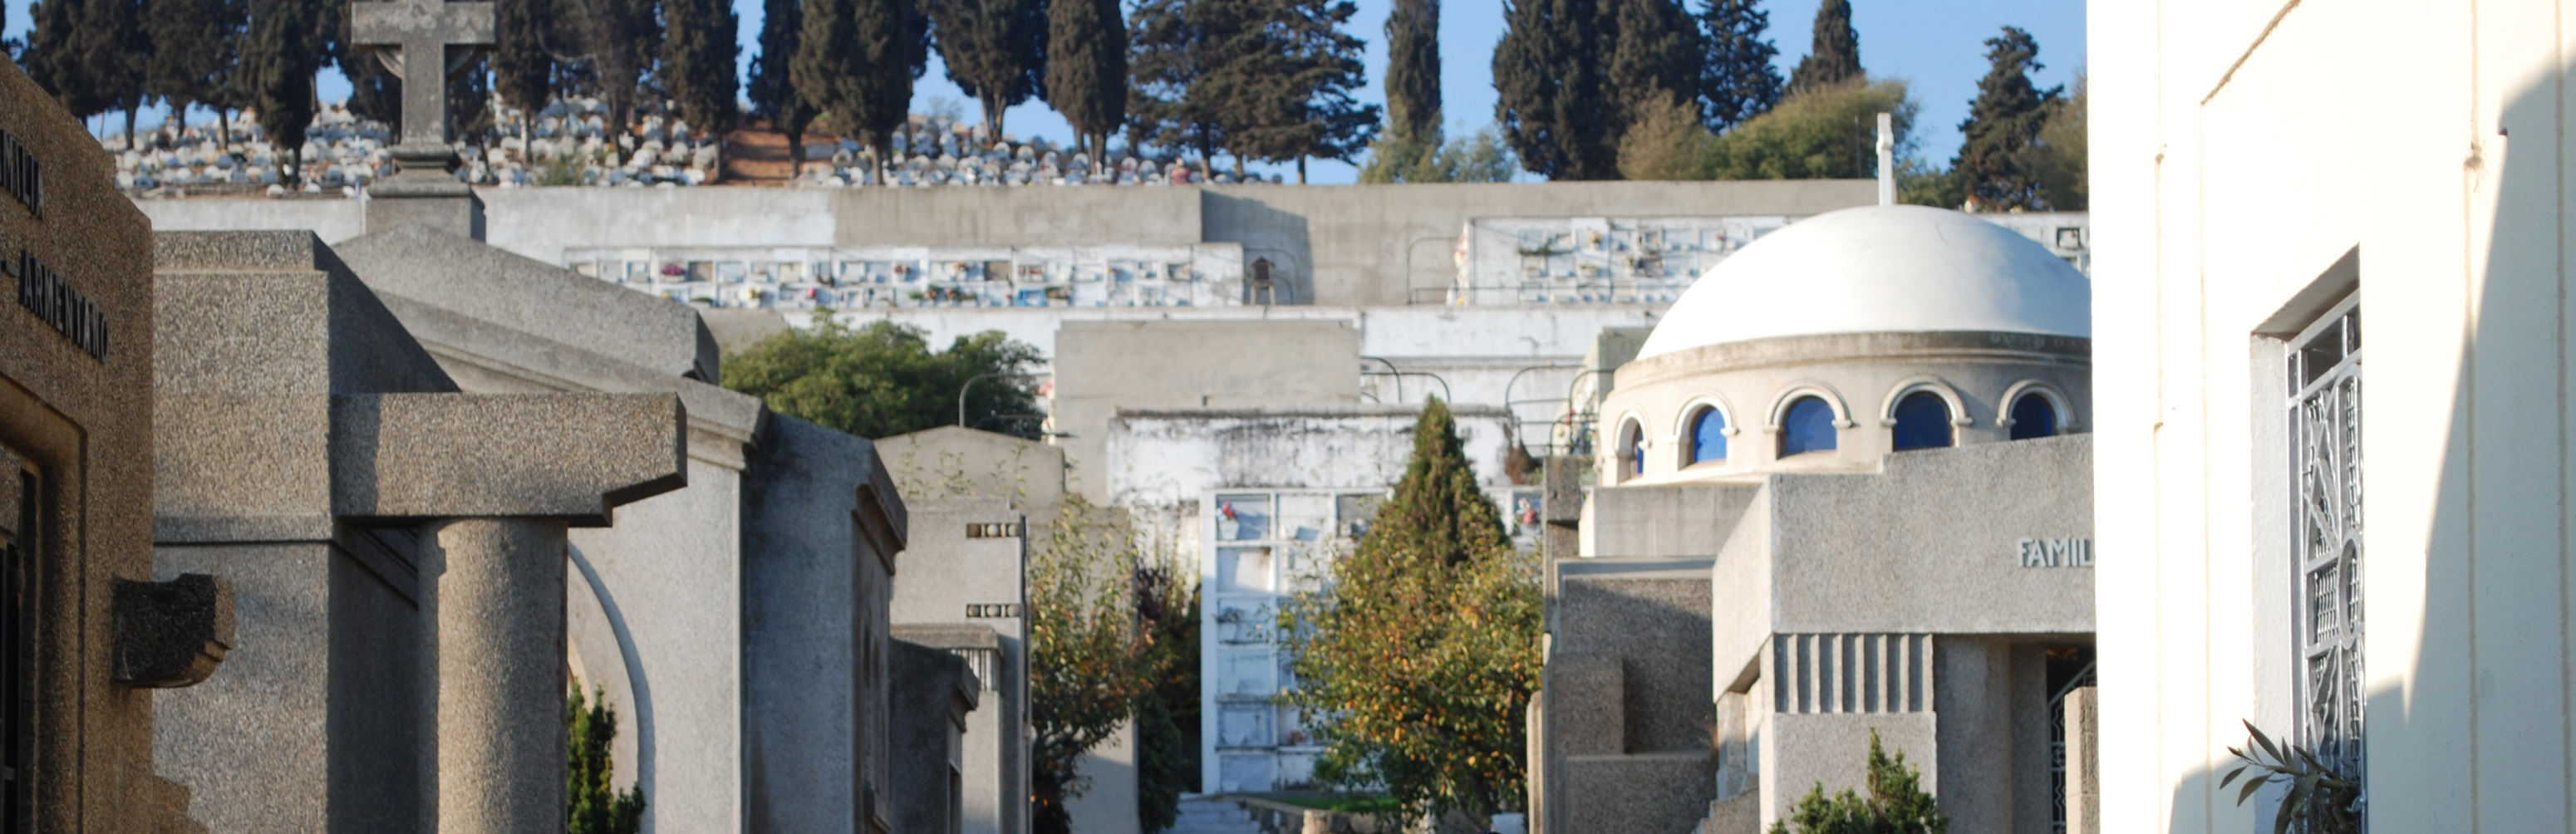 Cementerio Santa Inés